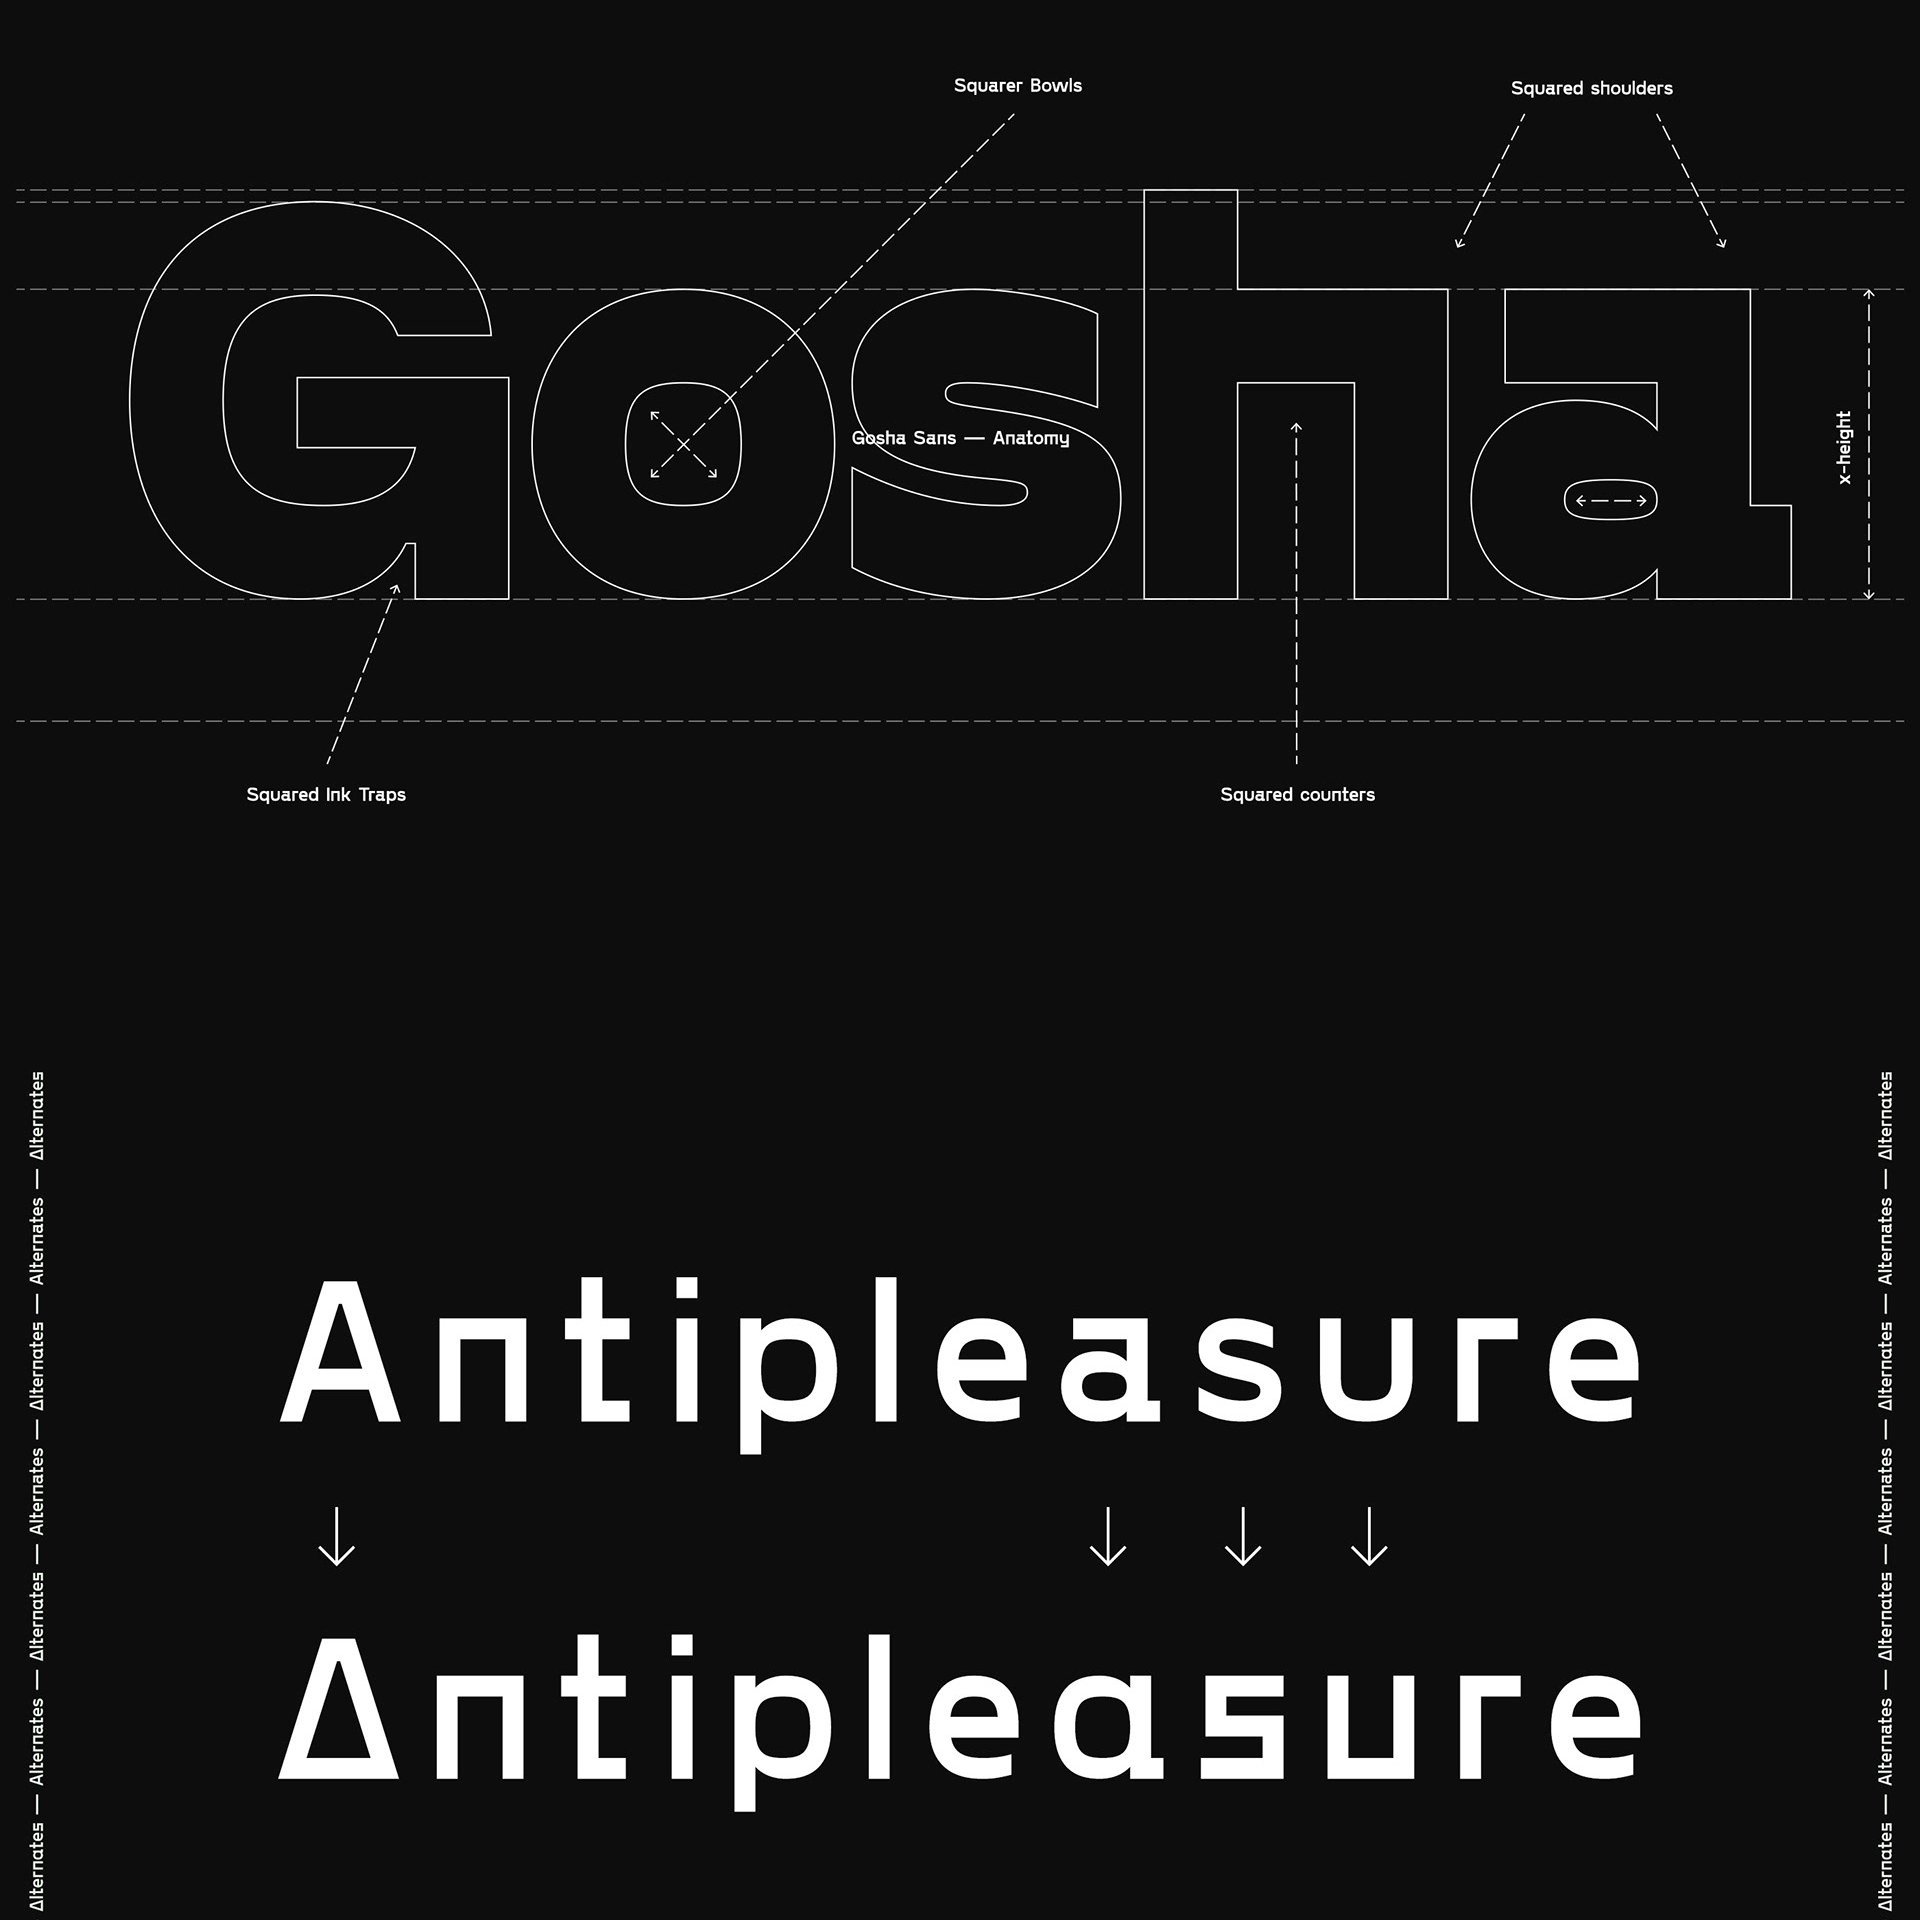 Gosha Sans — Teletype